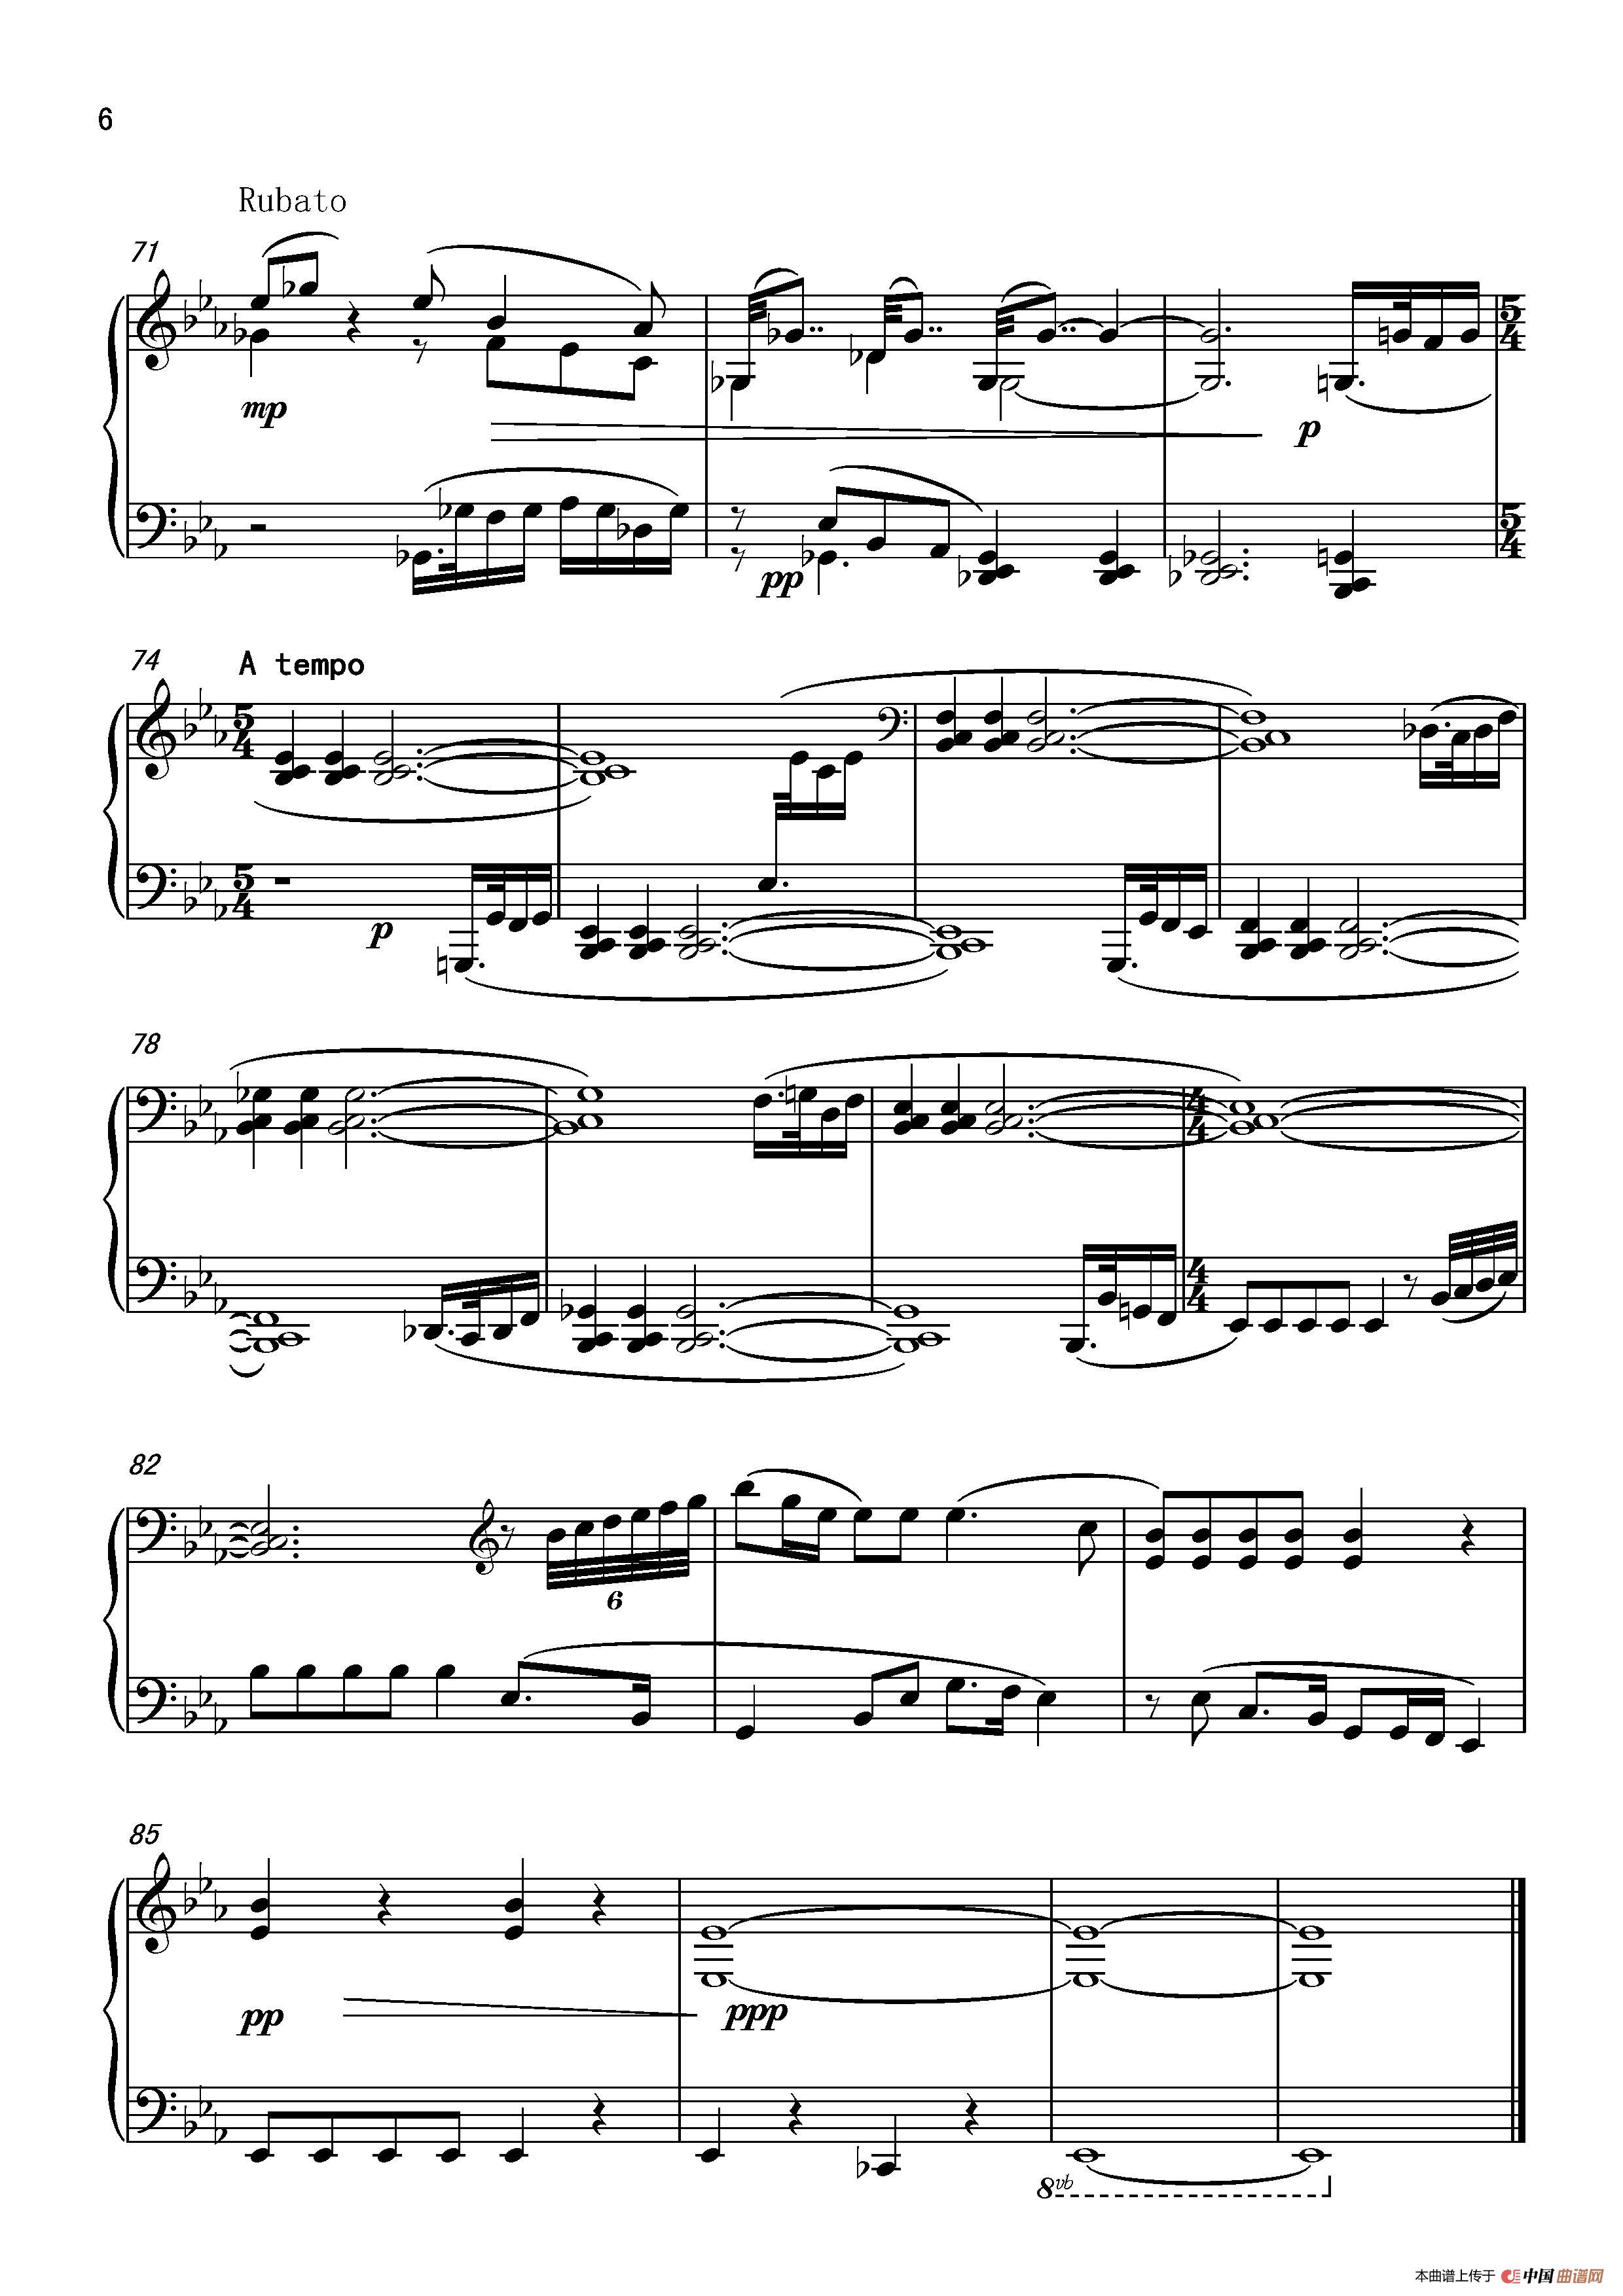 《第五钢琴奏鸣曲Piano Sonata No.5》钢琴曲谱图分享